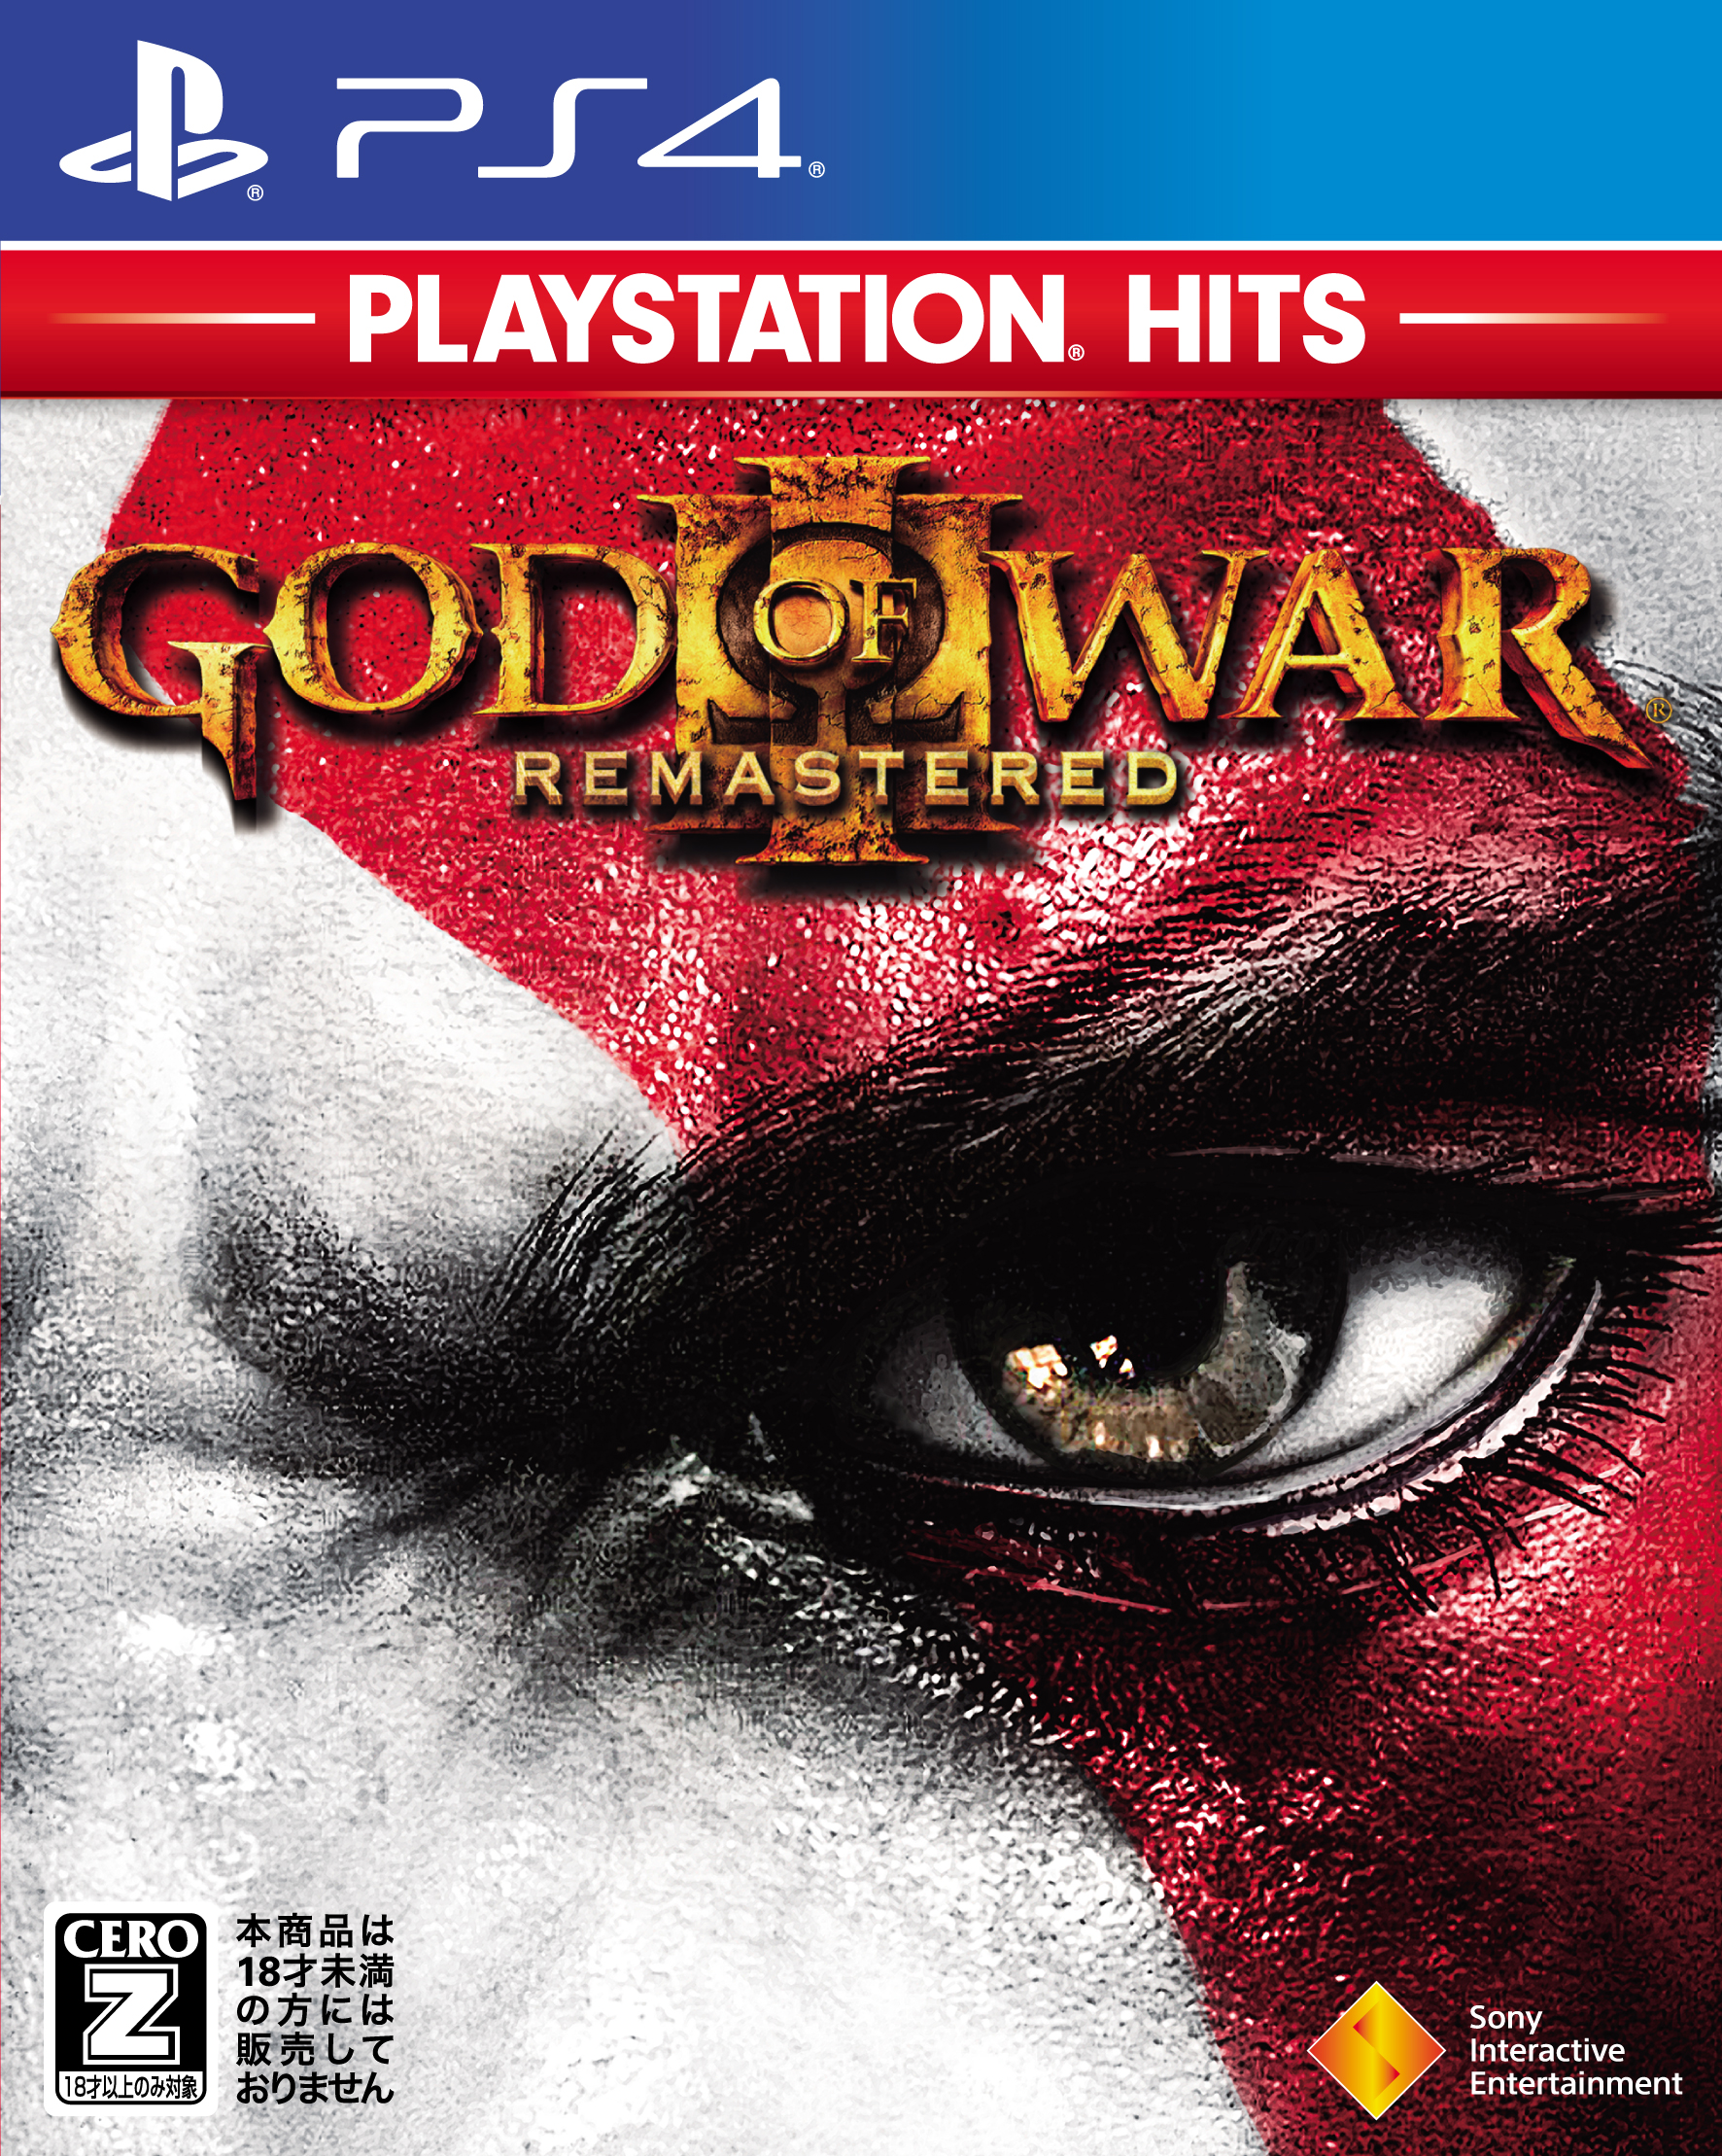 画像集 001 Ps4 Horizon Zero Dawn Complete Edition と God Of War Iii Remastered の